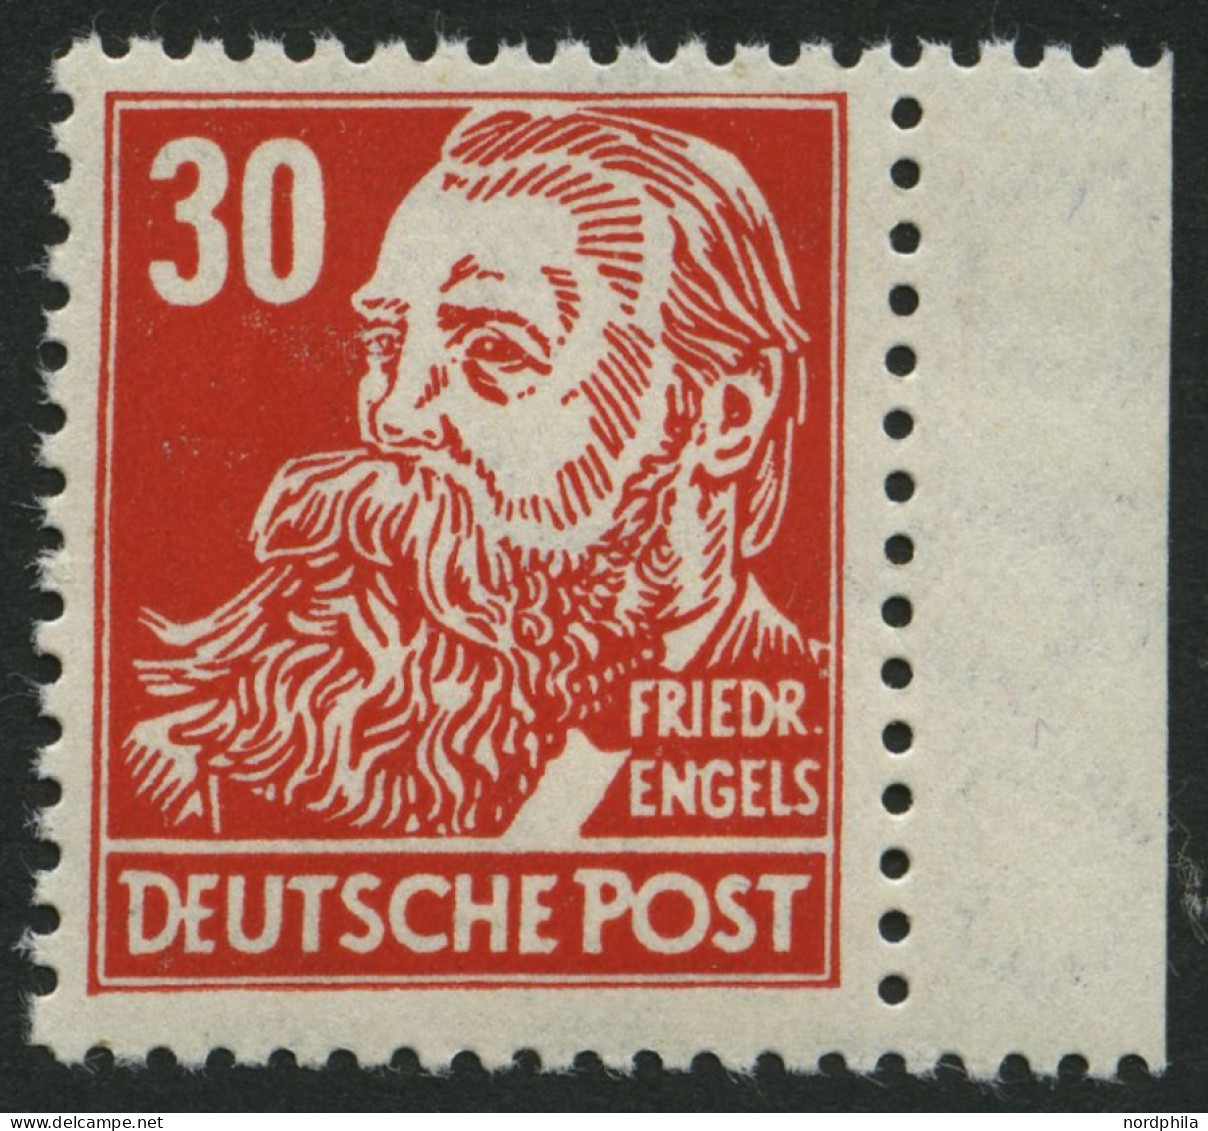 DDR 335z , 1952, 30 Pf. Rot Engels, Gewöhnliches Papier, Pracht, Gepr. Schönherr, Mi. 110.- - Gebraucht